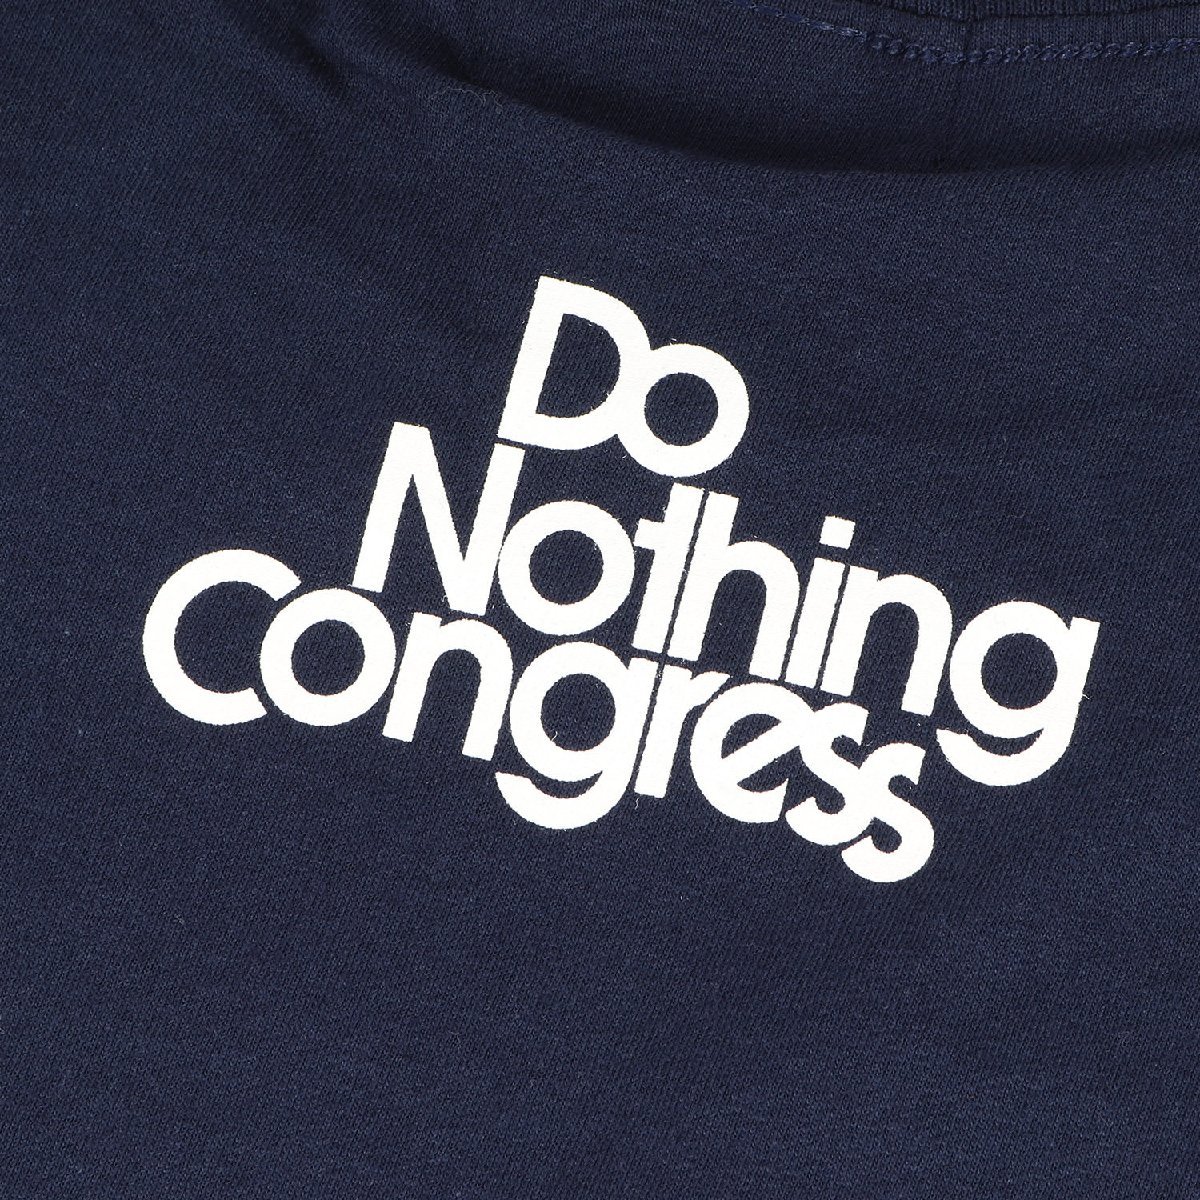 新品 Do Nothing Congress ドゥーナッシングコングレス Tシャツ サイズ:XL ブランドロゴ クルーネック 半袖 Tシャツ ネイビー 紺 トップス_画像5